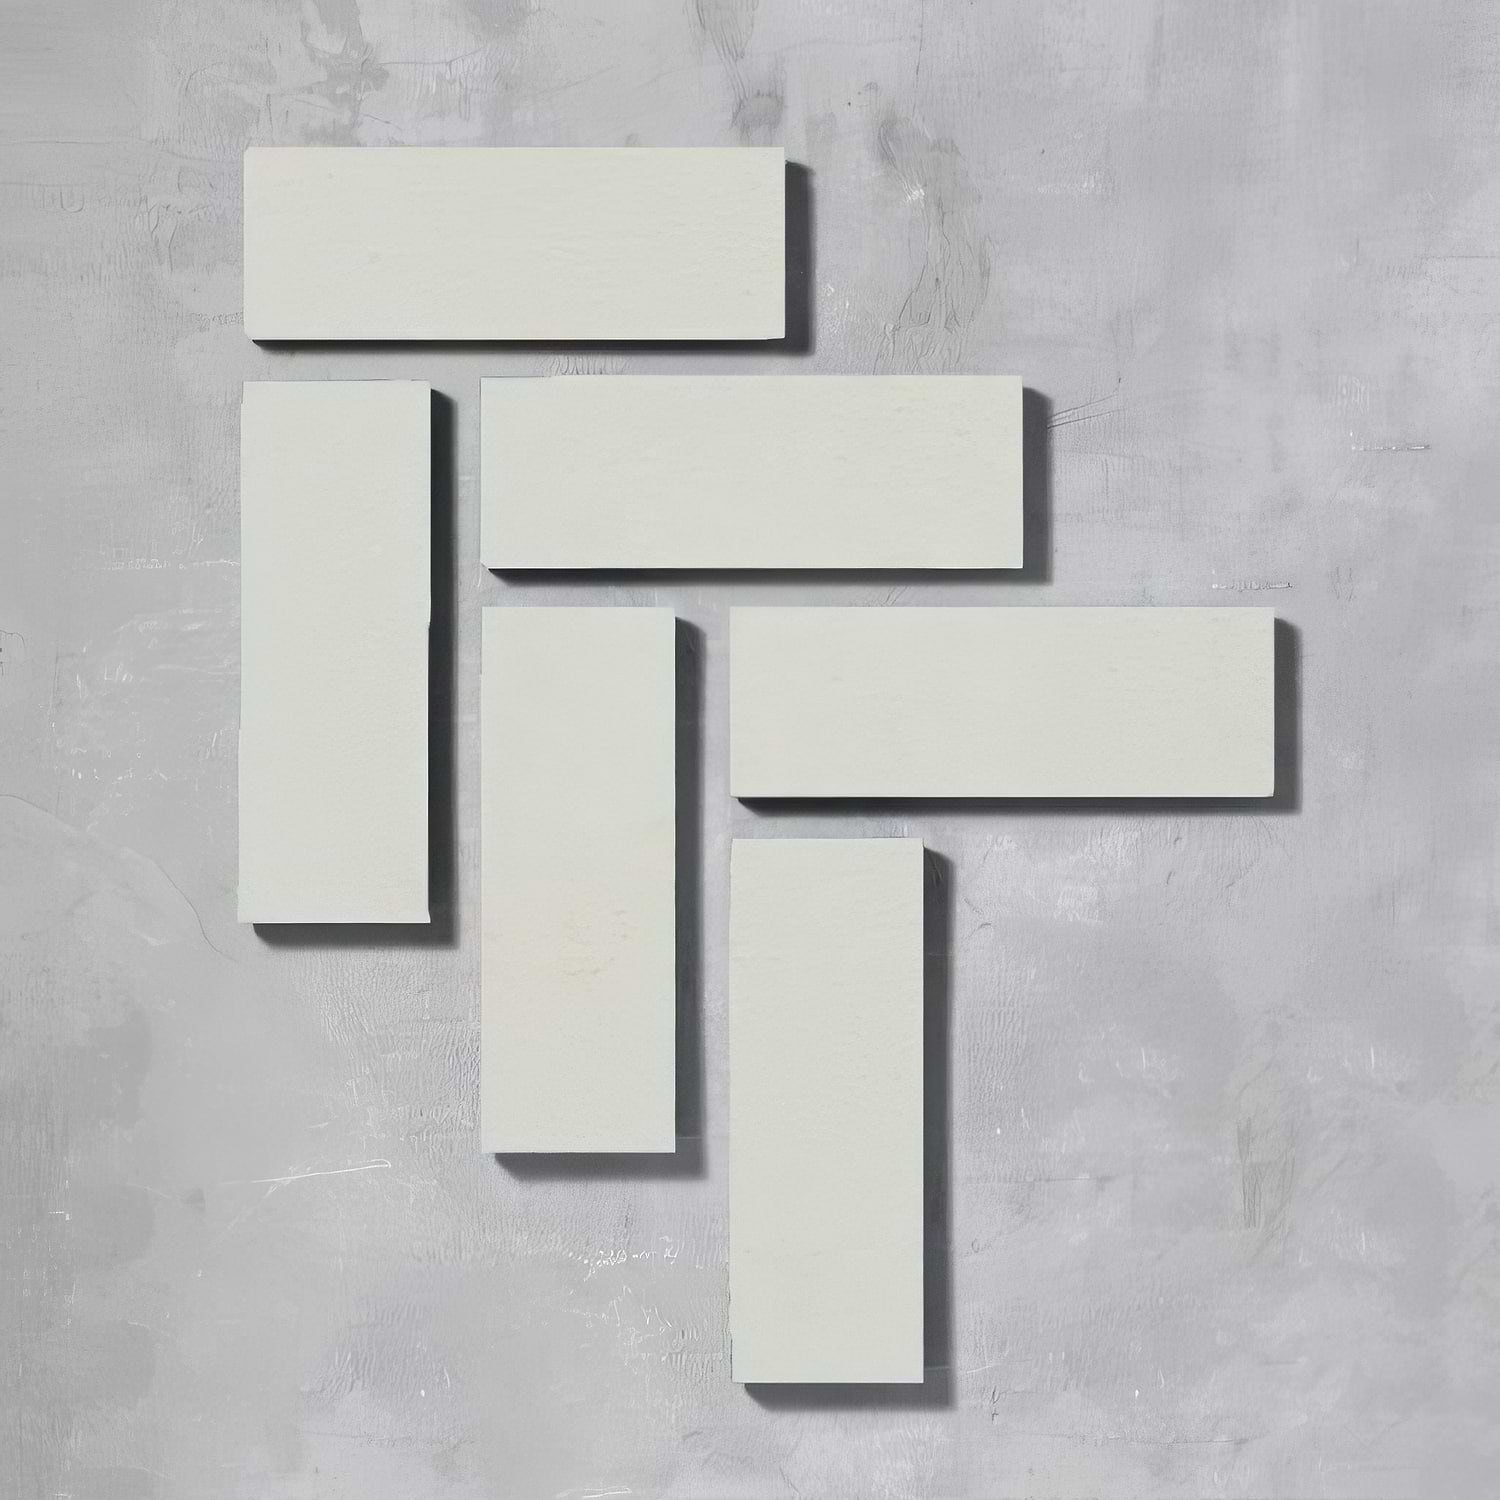 Brighton Stone Herringbone Tile - Hyperion Tiles